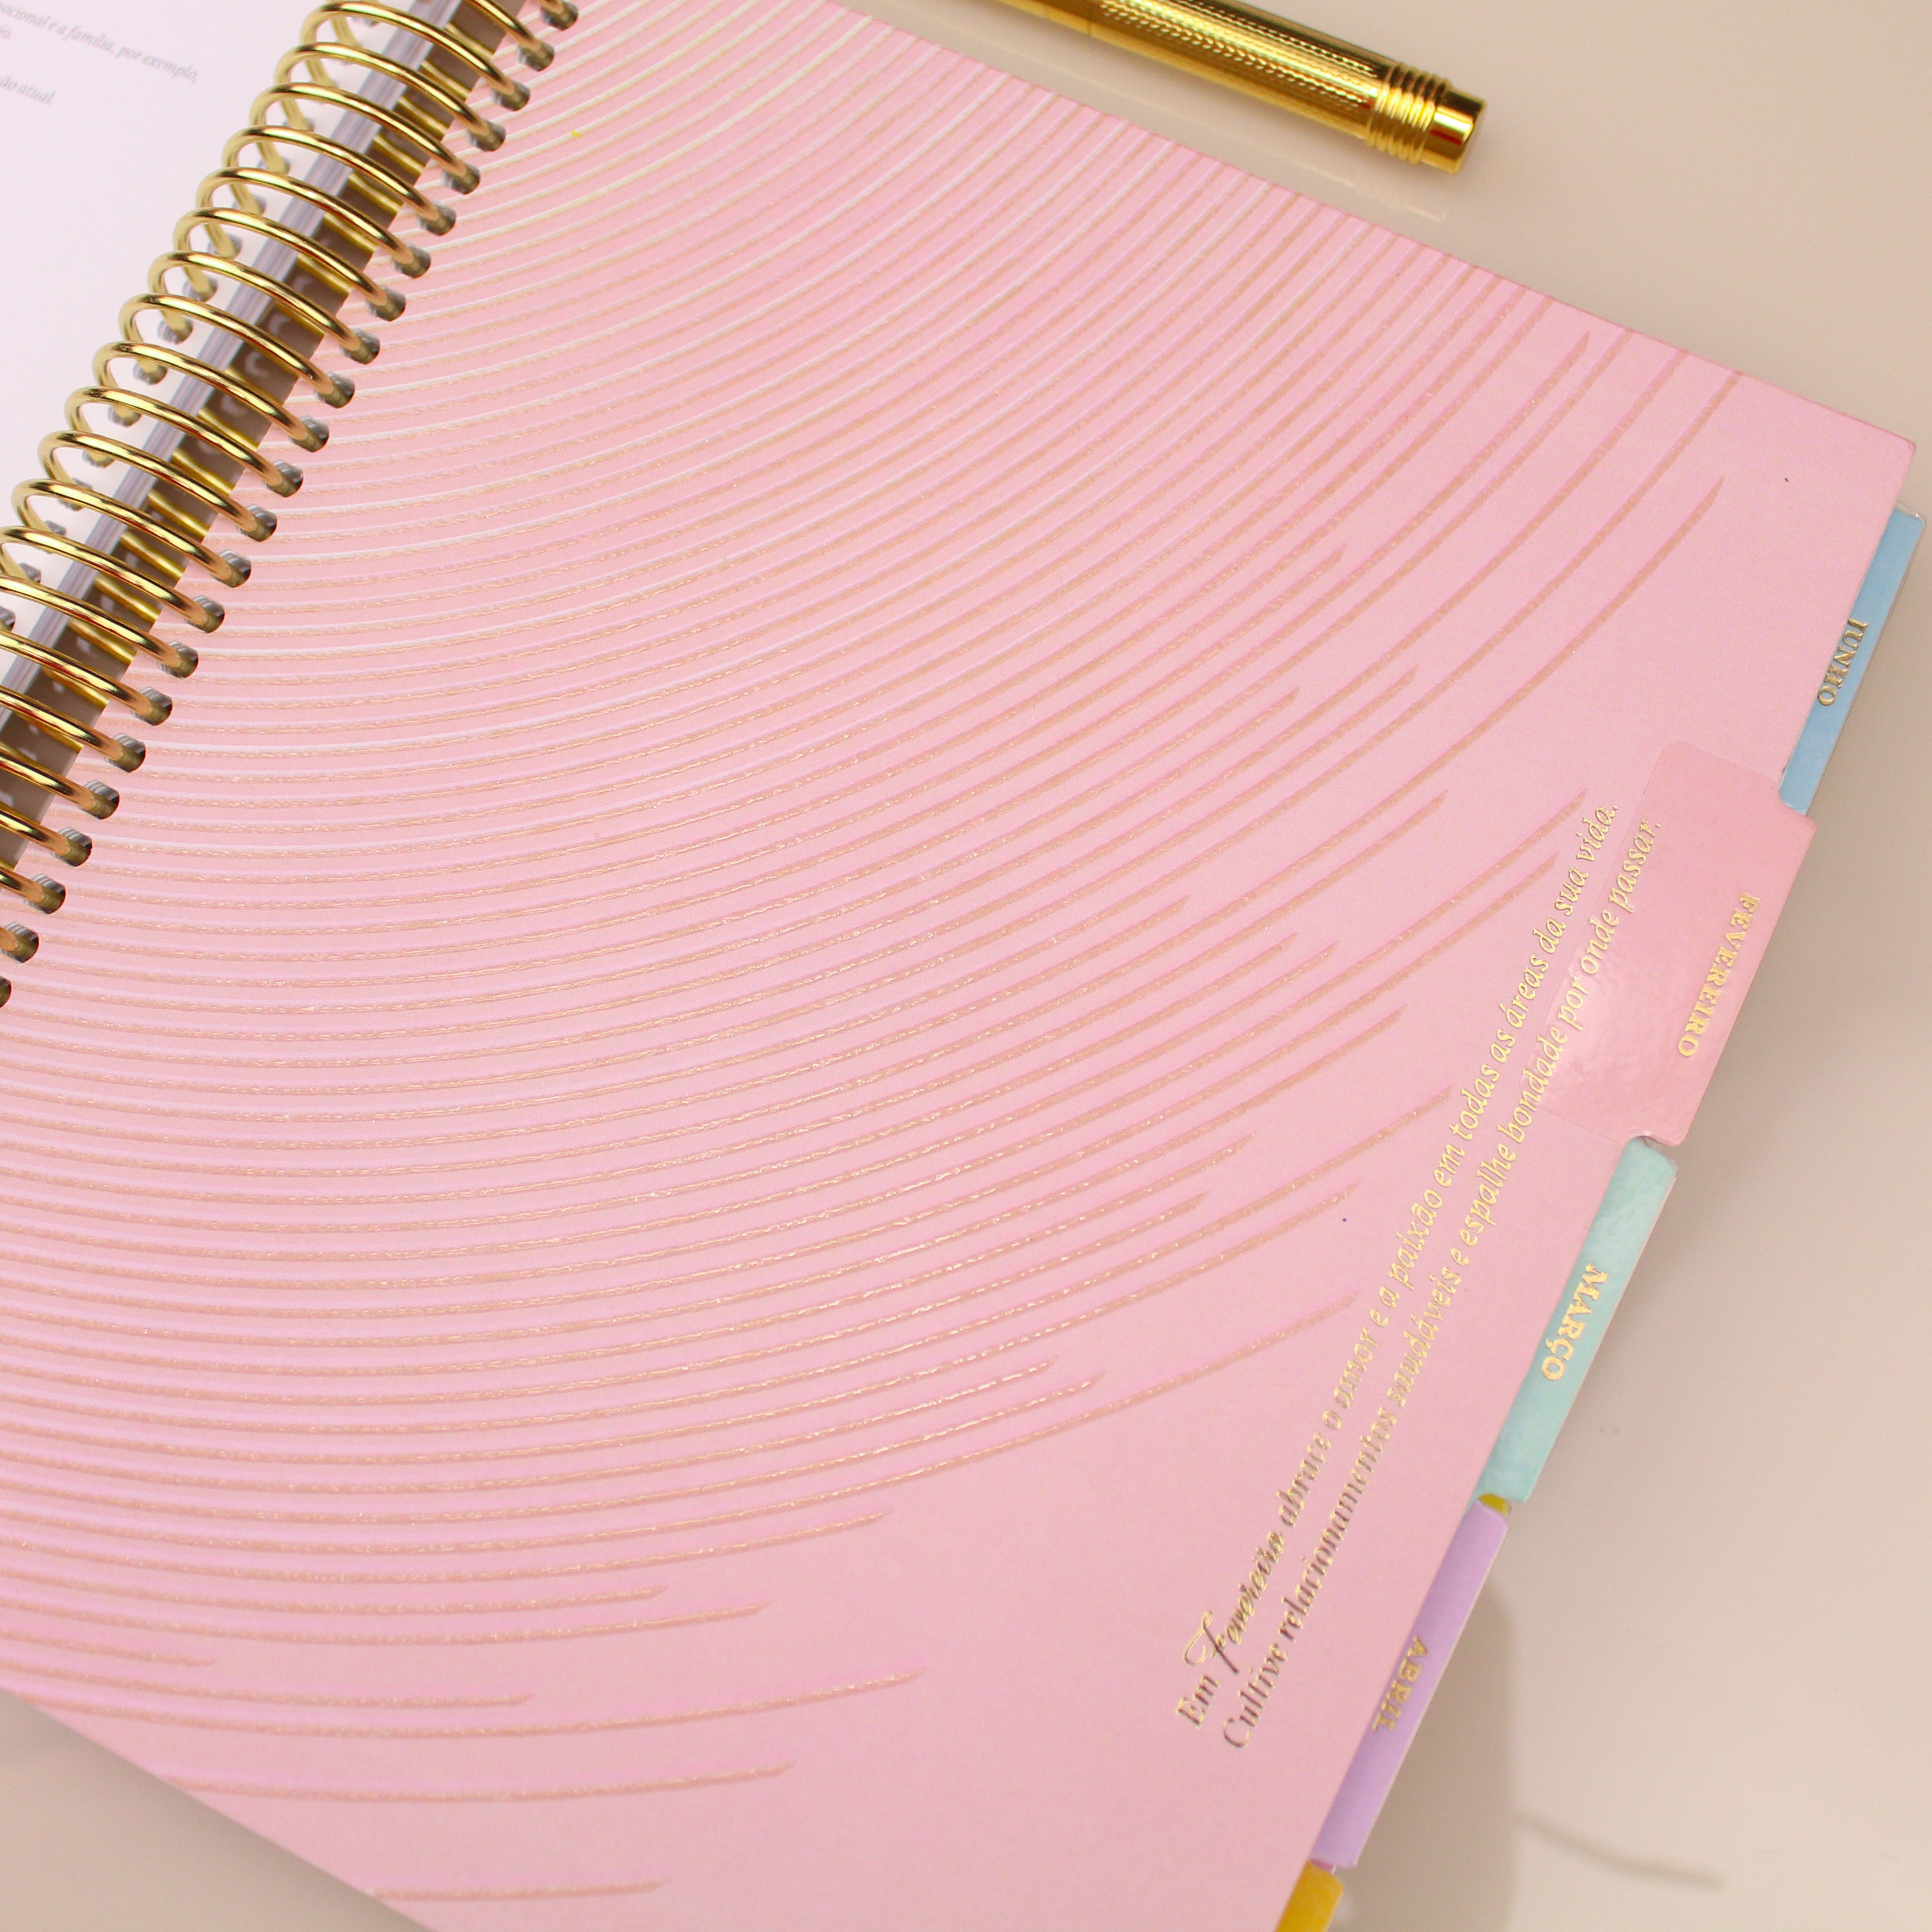 Enjoy Planner 2024 - Marble Pink and Blue (planner com acessórios grátis - vai com + de 700 adesivos, régua, 2 blocos de notas e elástico).